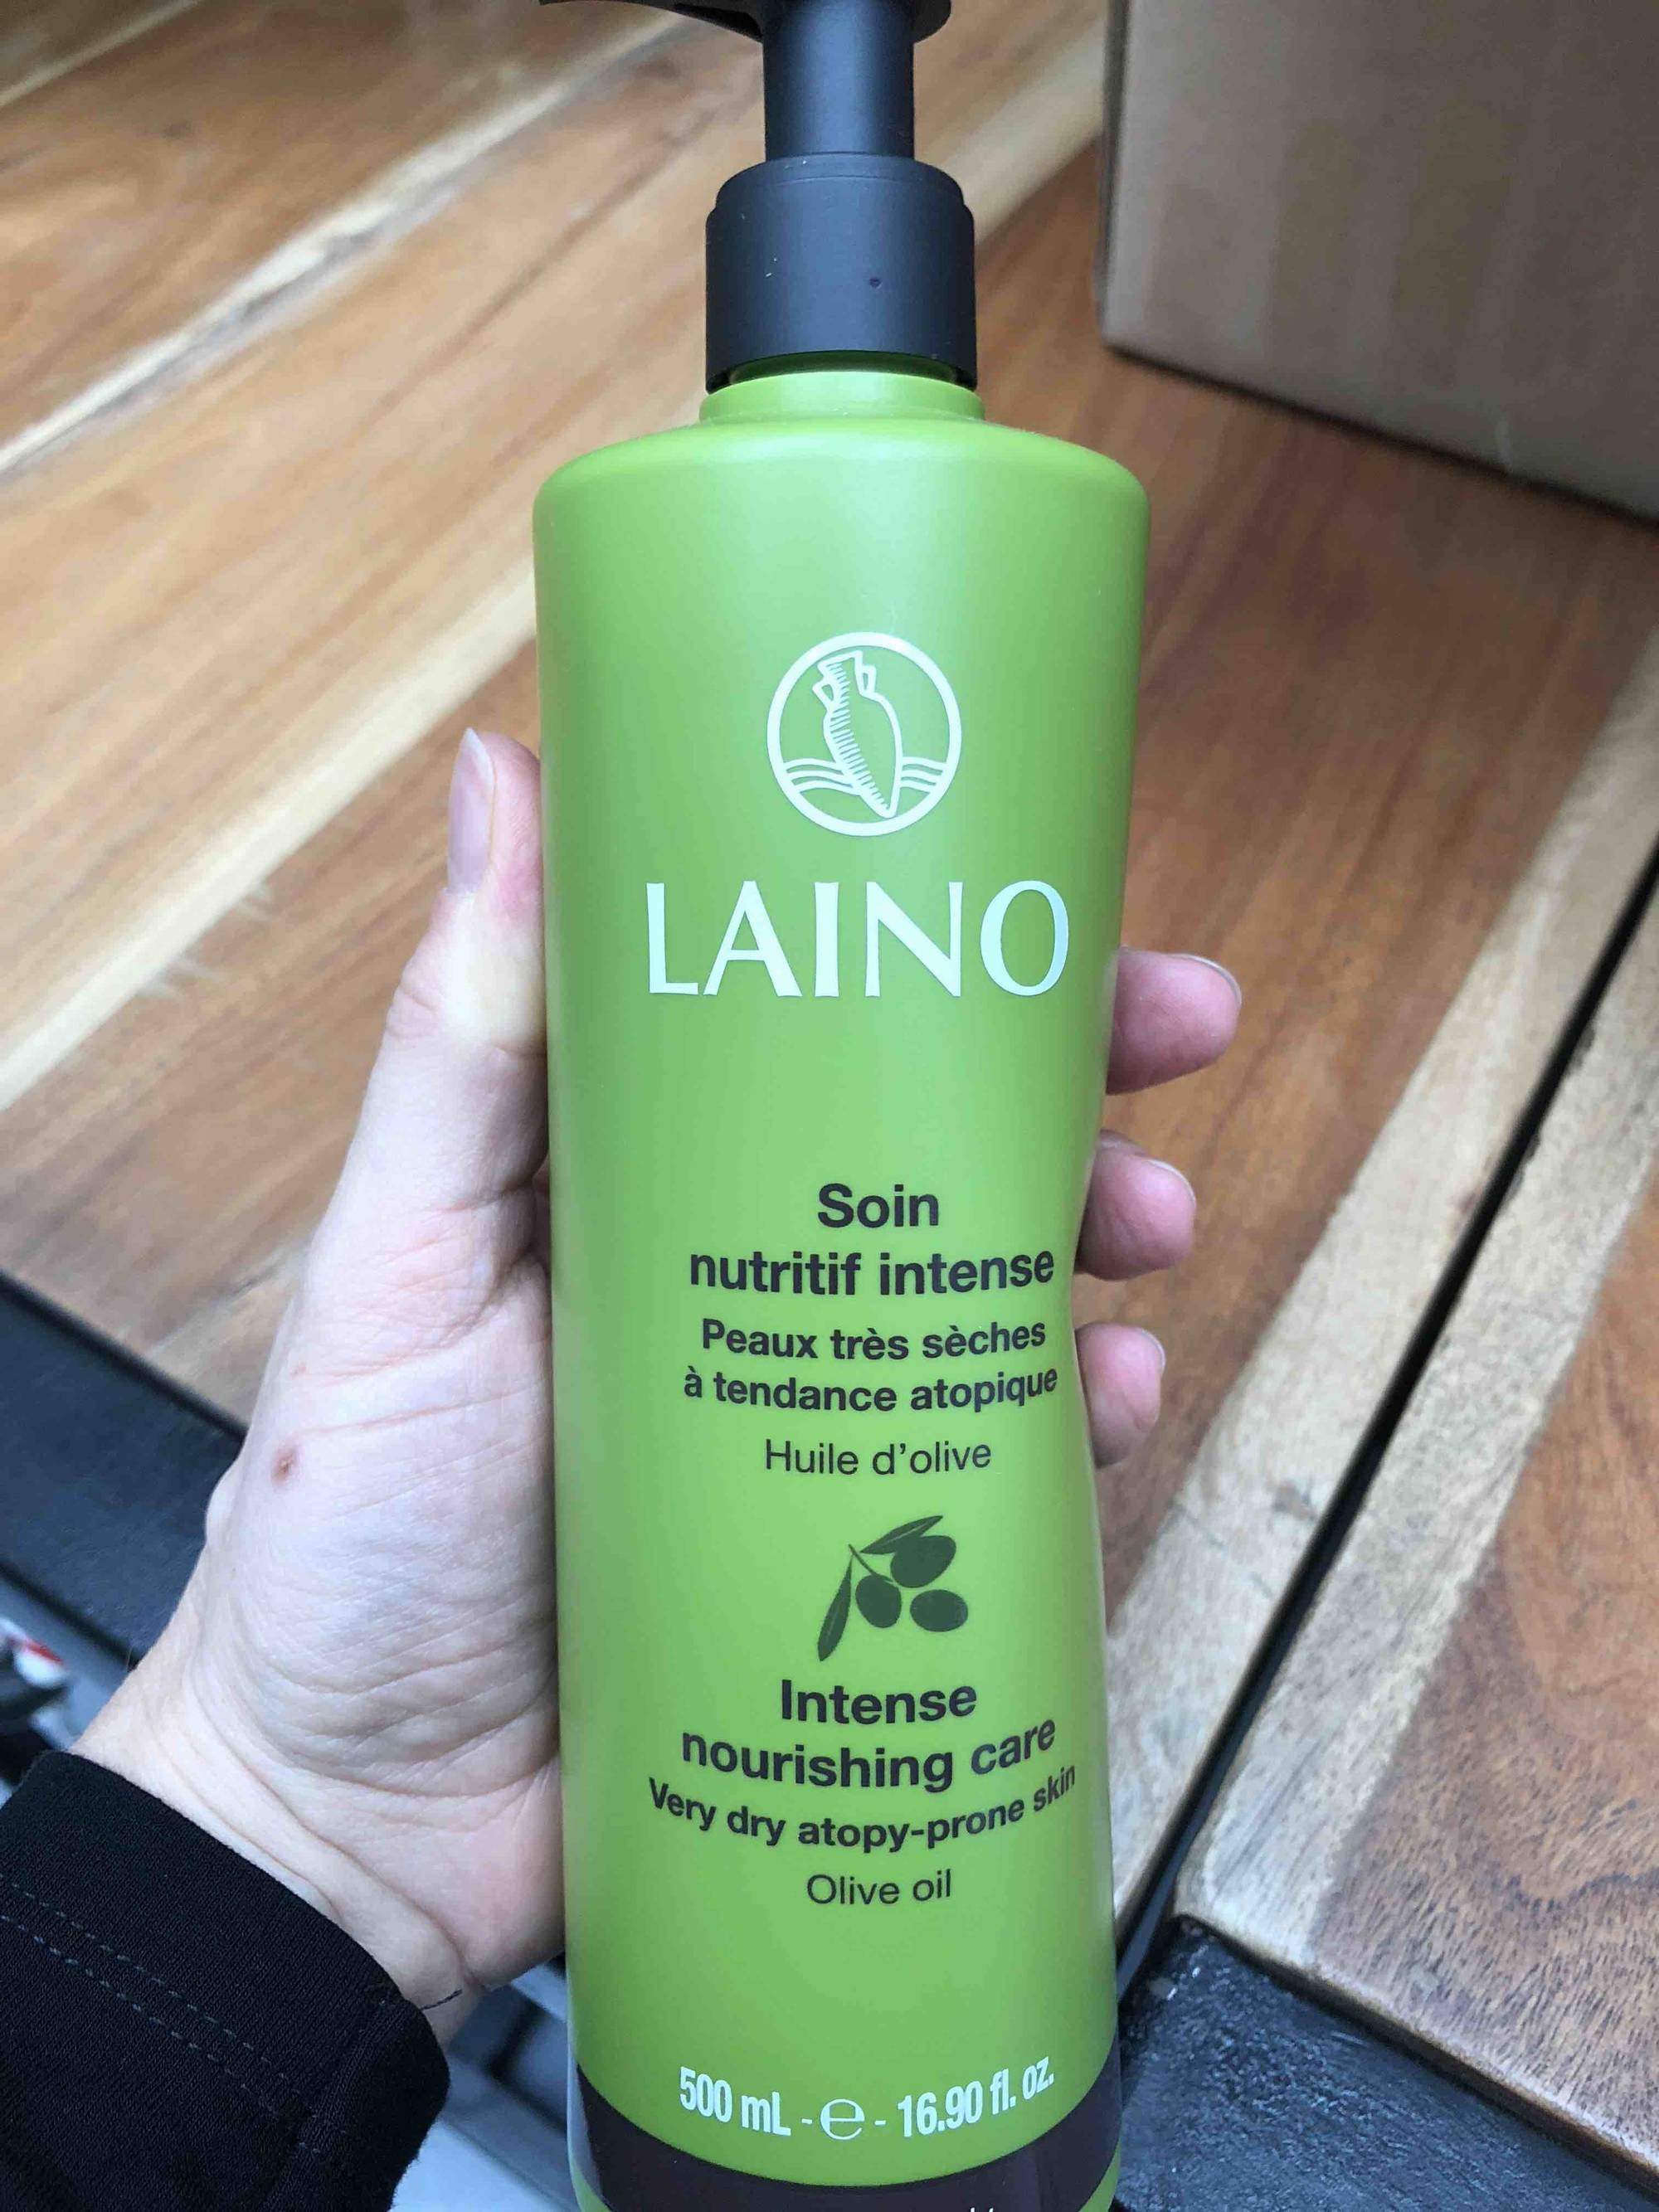 LAINO - Soin nutritif intense peaux très sèches à tendance atopique